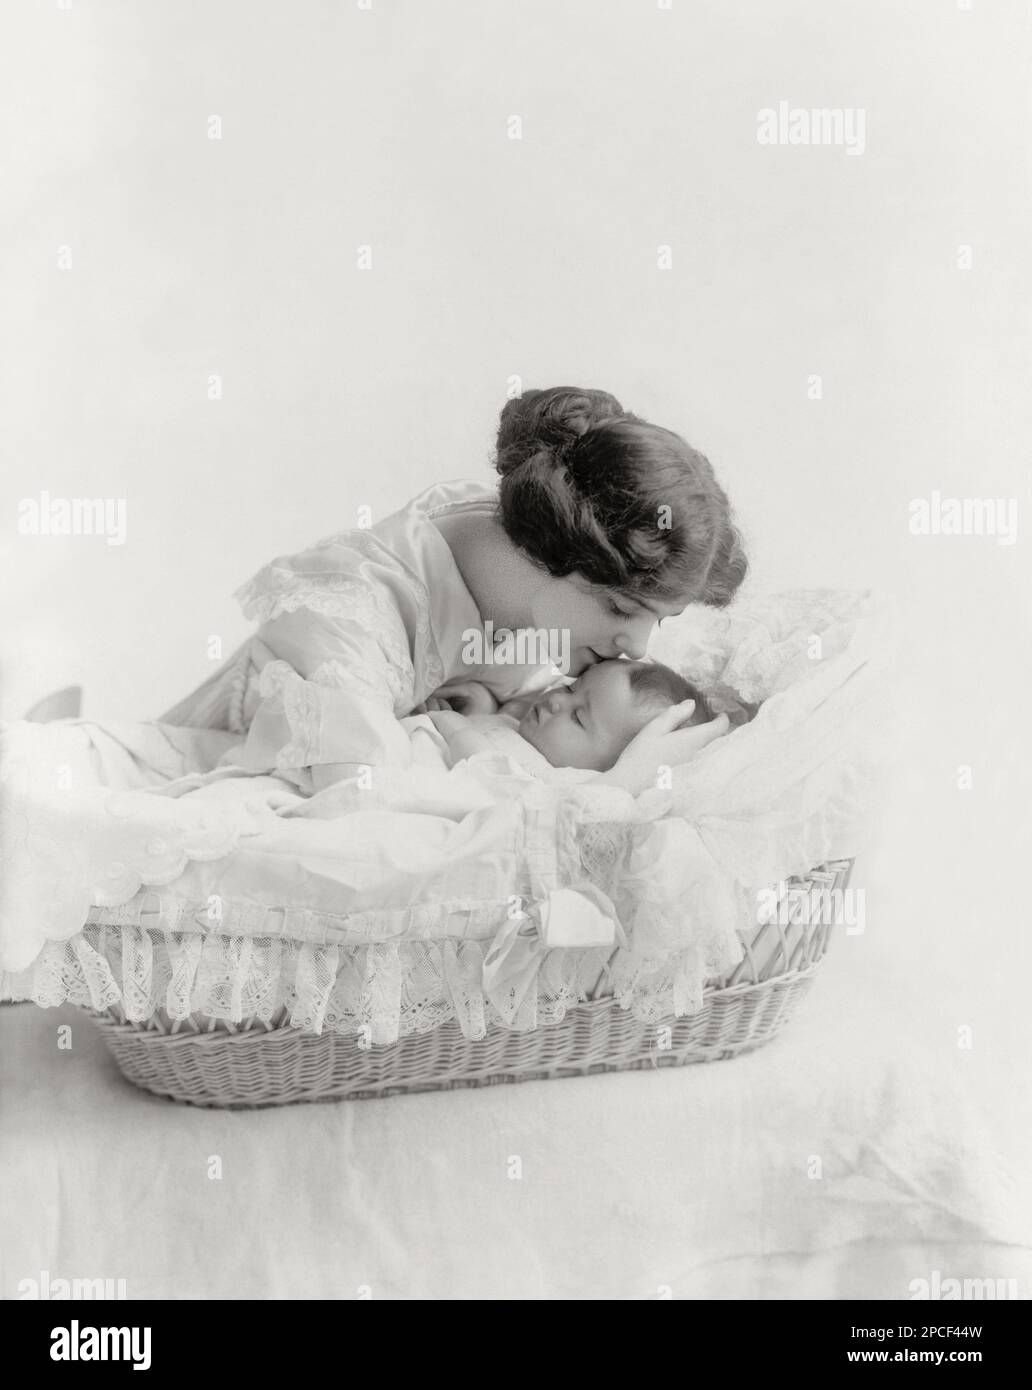 1912 , USA : Junge Frau küsst Baby im Körbchen . Foto von Stadler , New York und Chicago , USA - FAMILIE - FAMIGLIA - MAMMA - MADRE - MUTTER - LIEBE - AMORE MATERNO - FIGLIO - SOHN - - KISS - BACIO - SENTIMENTAL - SENTIMENTALE - ROMANTISCH - ROMANTICO - FOTO STORICHE - GESCHICHTSFOTOS - - KIND - CULLA - SONNO - TRAUM - ADDORMENTATO - Träumen - BAMBINO - BAMBINI - KINDER - BABY - KINDHEIT - KINDHEIT - KINDHEIT - NOVECENTO - 900er - '900 - MODE - MODA - BELLE EPOQUE - Chignon - pizzo - Spitze - BABY - PORTRÄT - RITRATTO ----- Archivio GBB Stockfoto